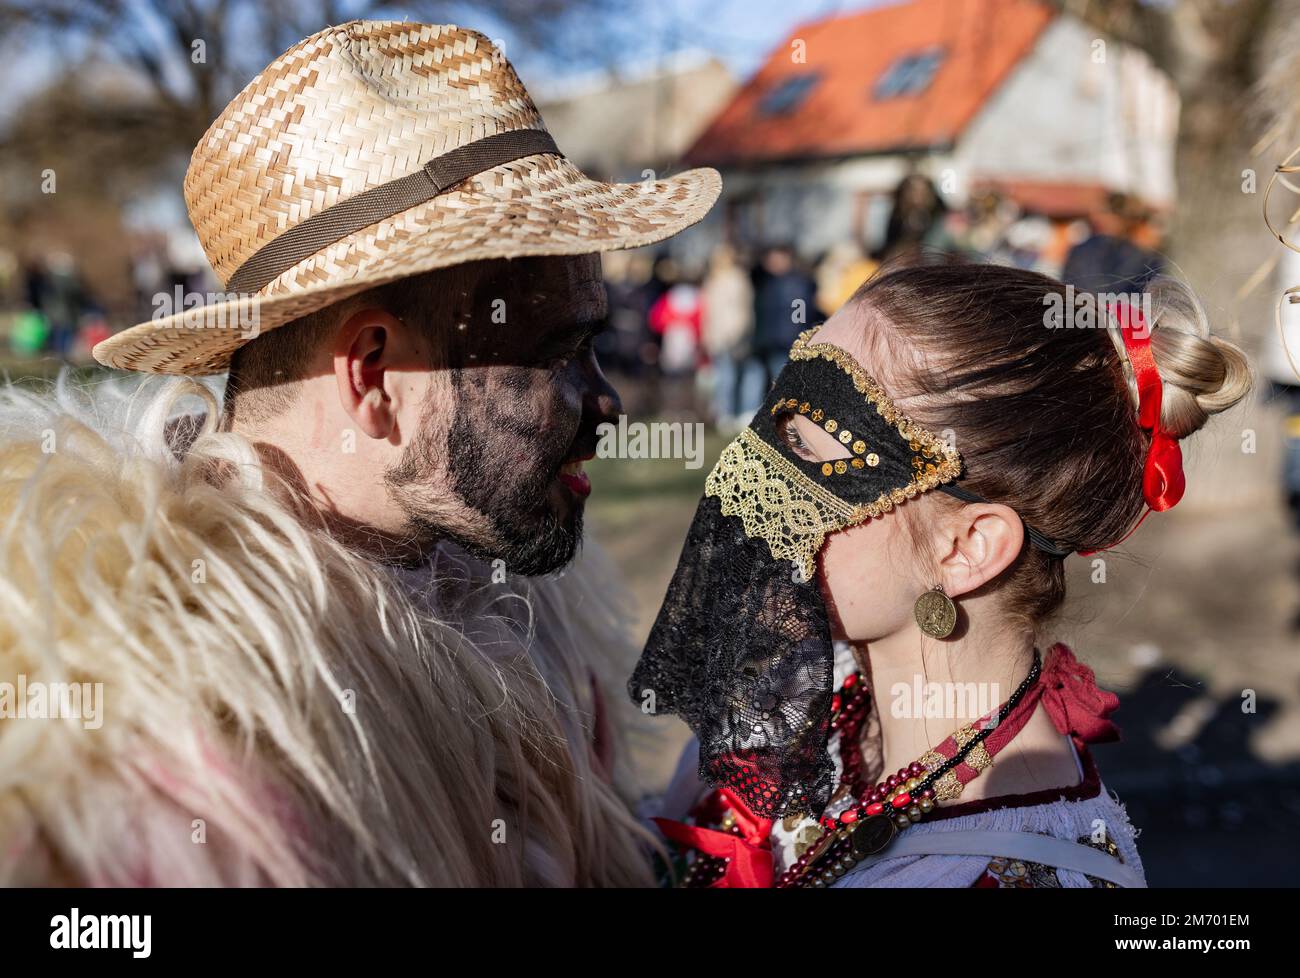 Buso festivities / Poklade from Mohacs, Hungary Stock Photo